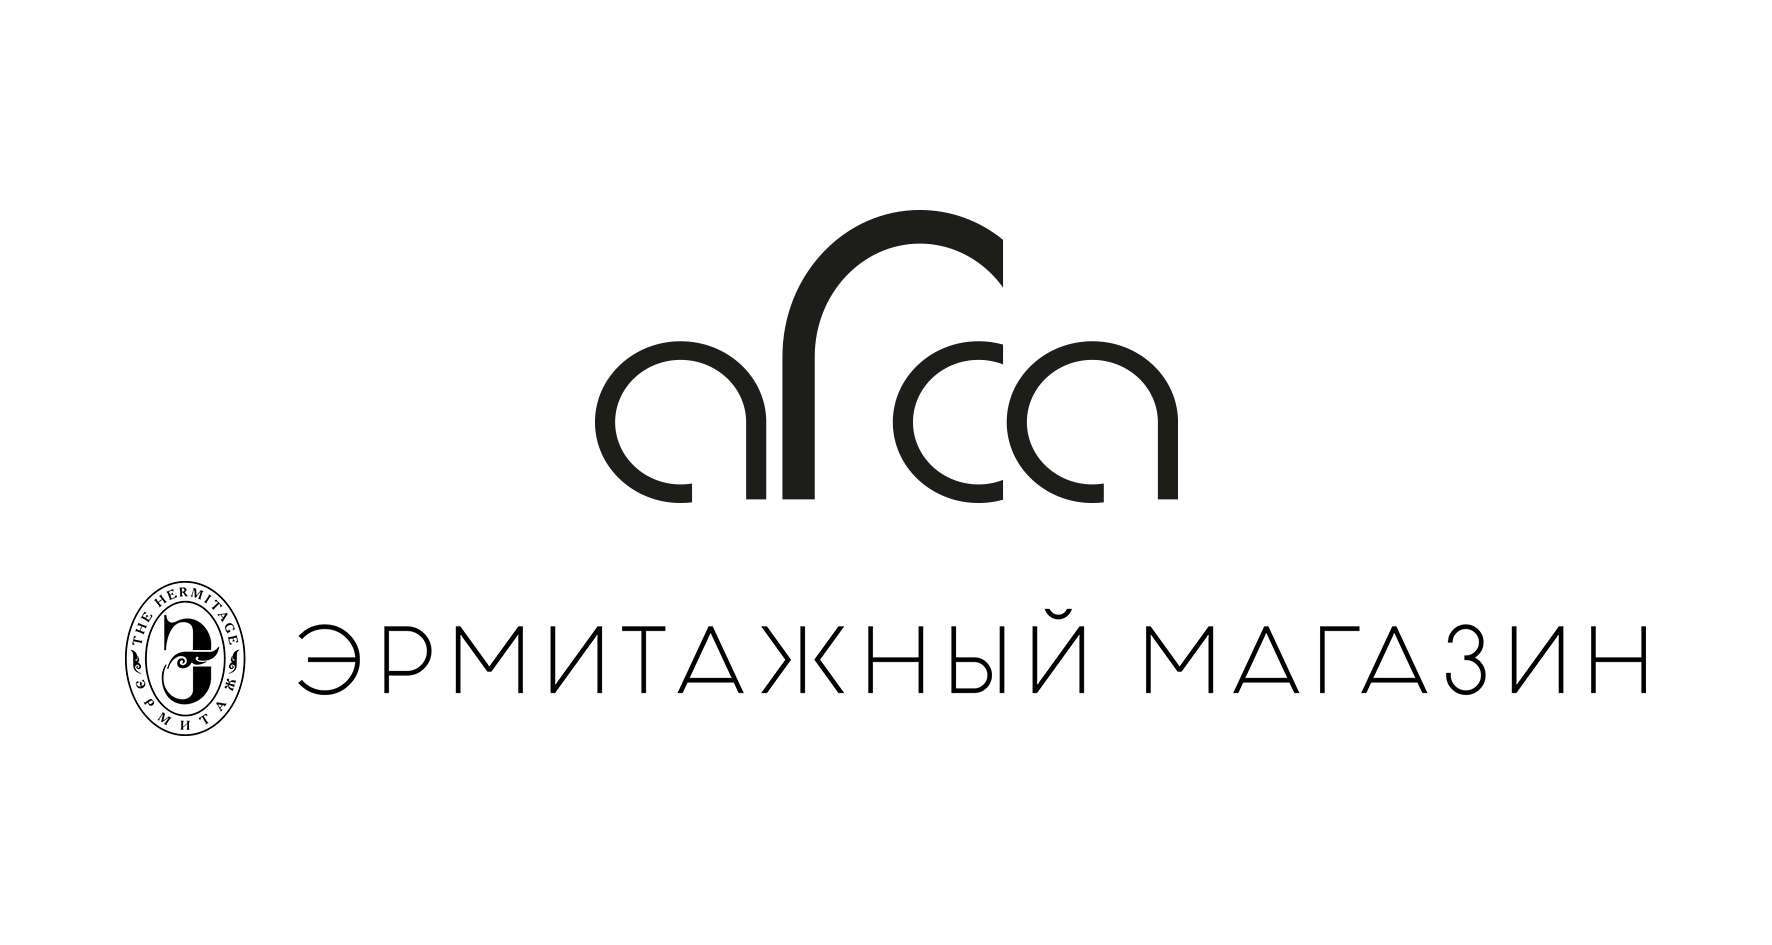 Арка Одежда и аксессуары, купить онлайн, Арка в универмаге Bolshoy